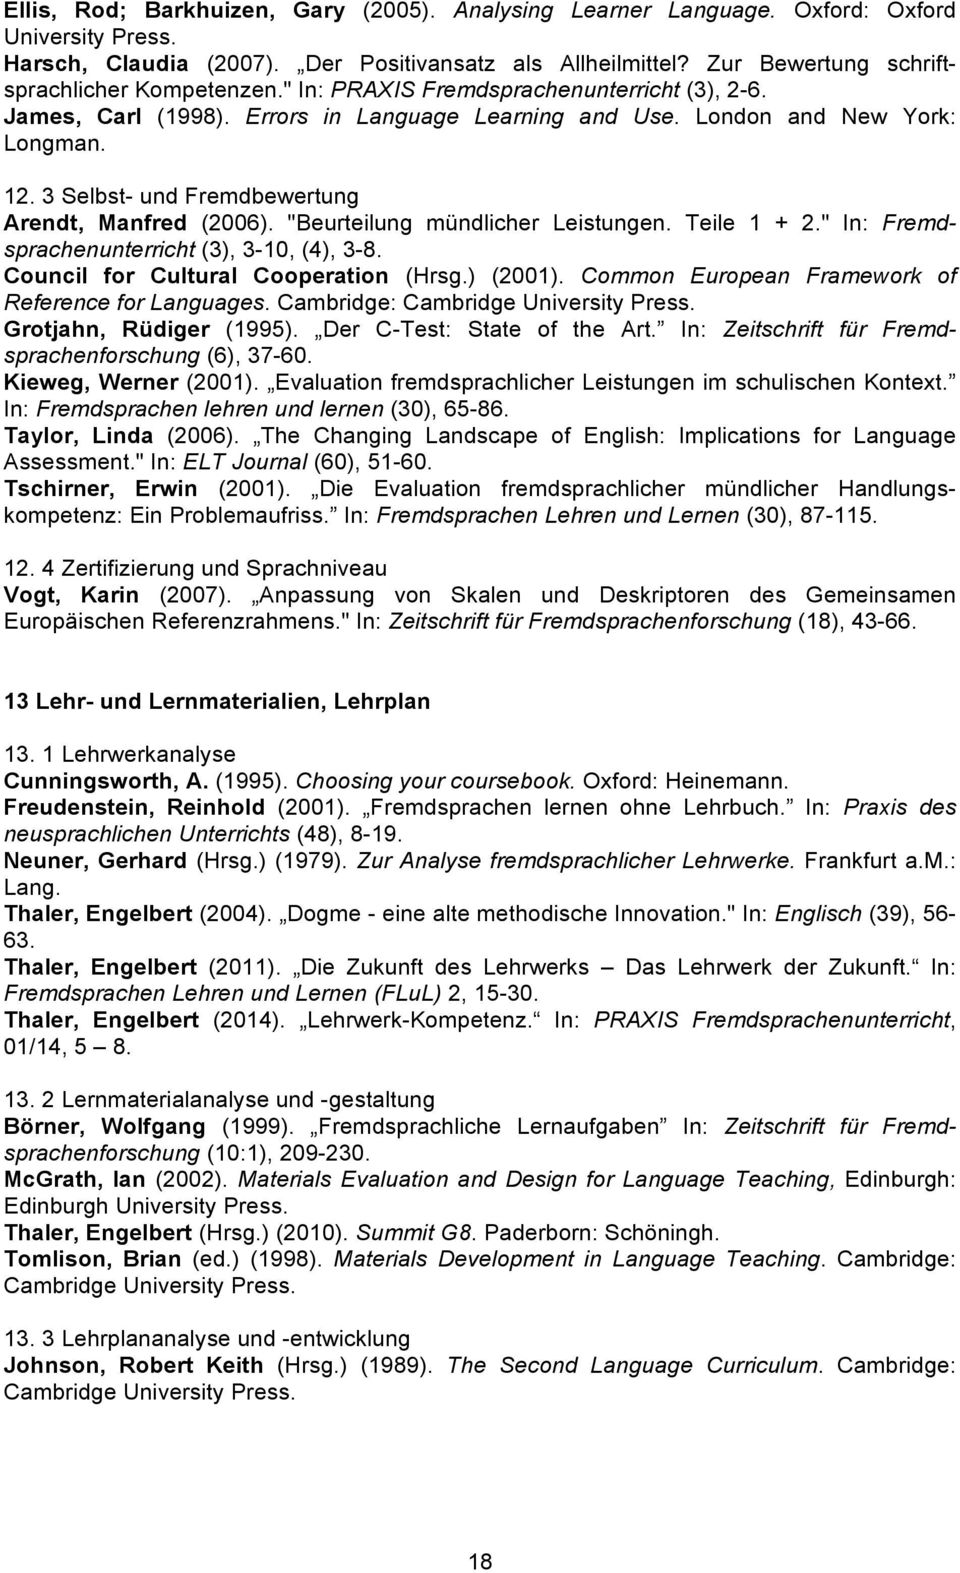 3 Selbst- und Fremdbewertung Arendt, Manfred (2006). "Beurteilung mündlicher Leistungen. Teile 1 + 2." In: Fremdsprachenunterricht (3), 3-10, (4), 3-8. Council for Cultural Cooperation (Hrsg.) (2001).